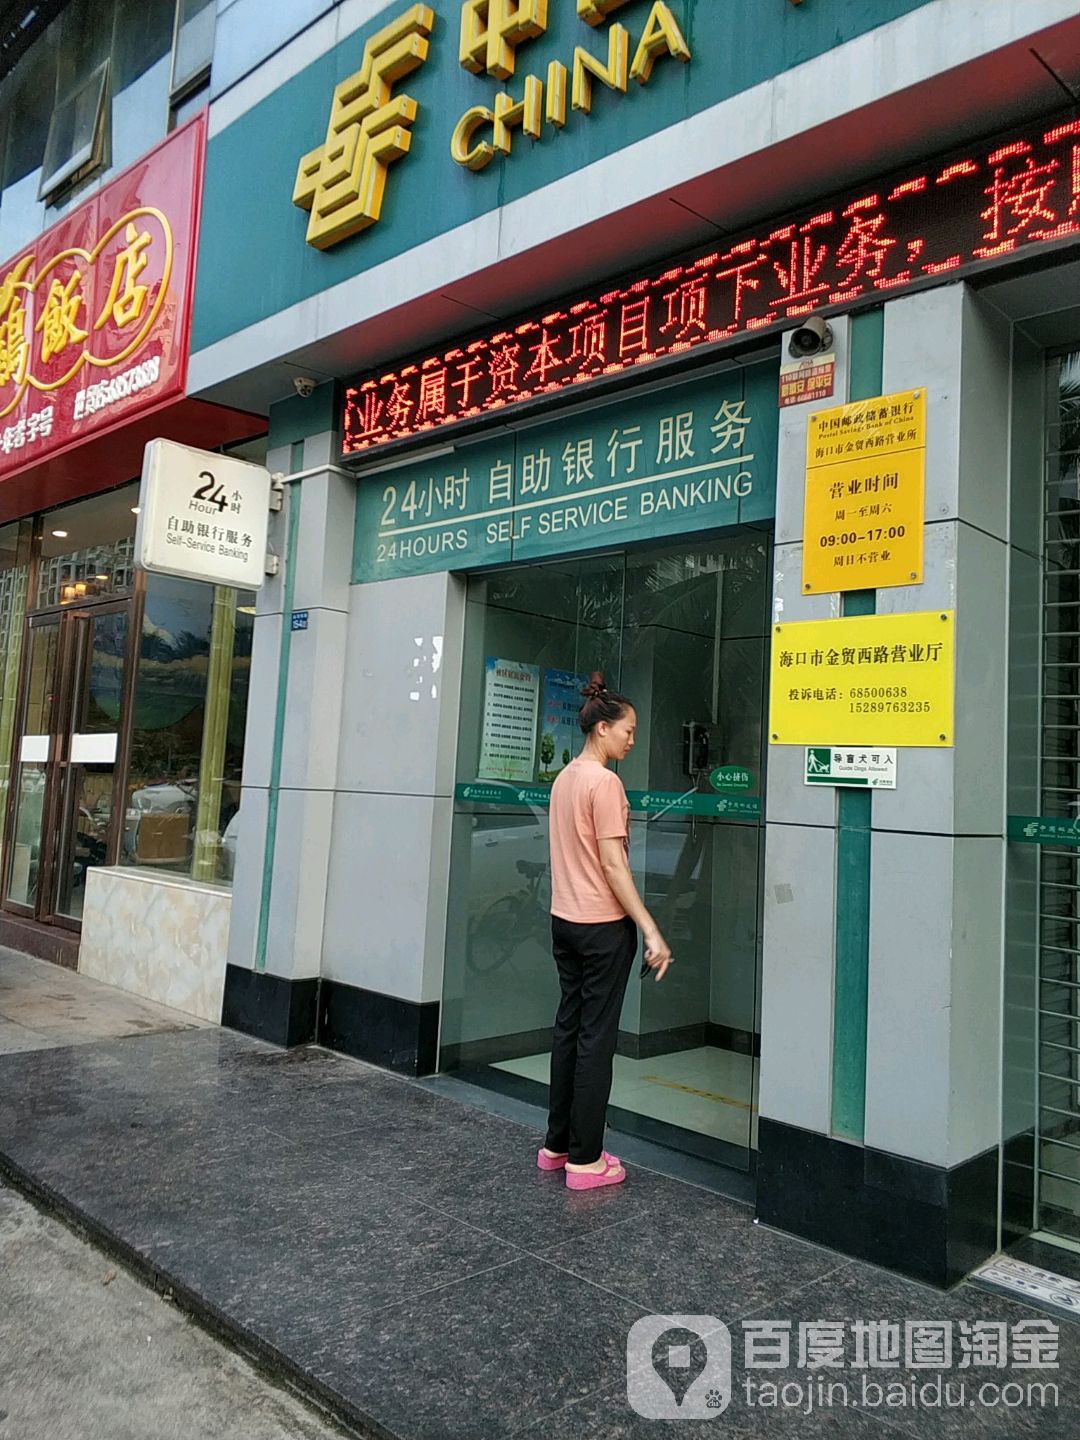 中國郵政儲蓄銀行24小時自助銀行(金貿西路支行)